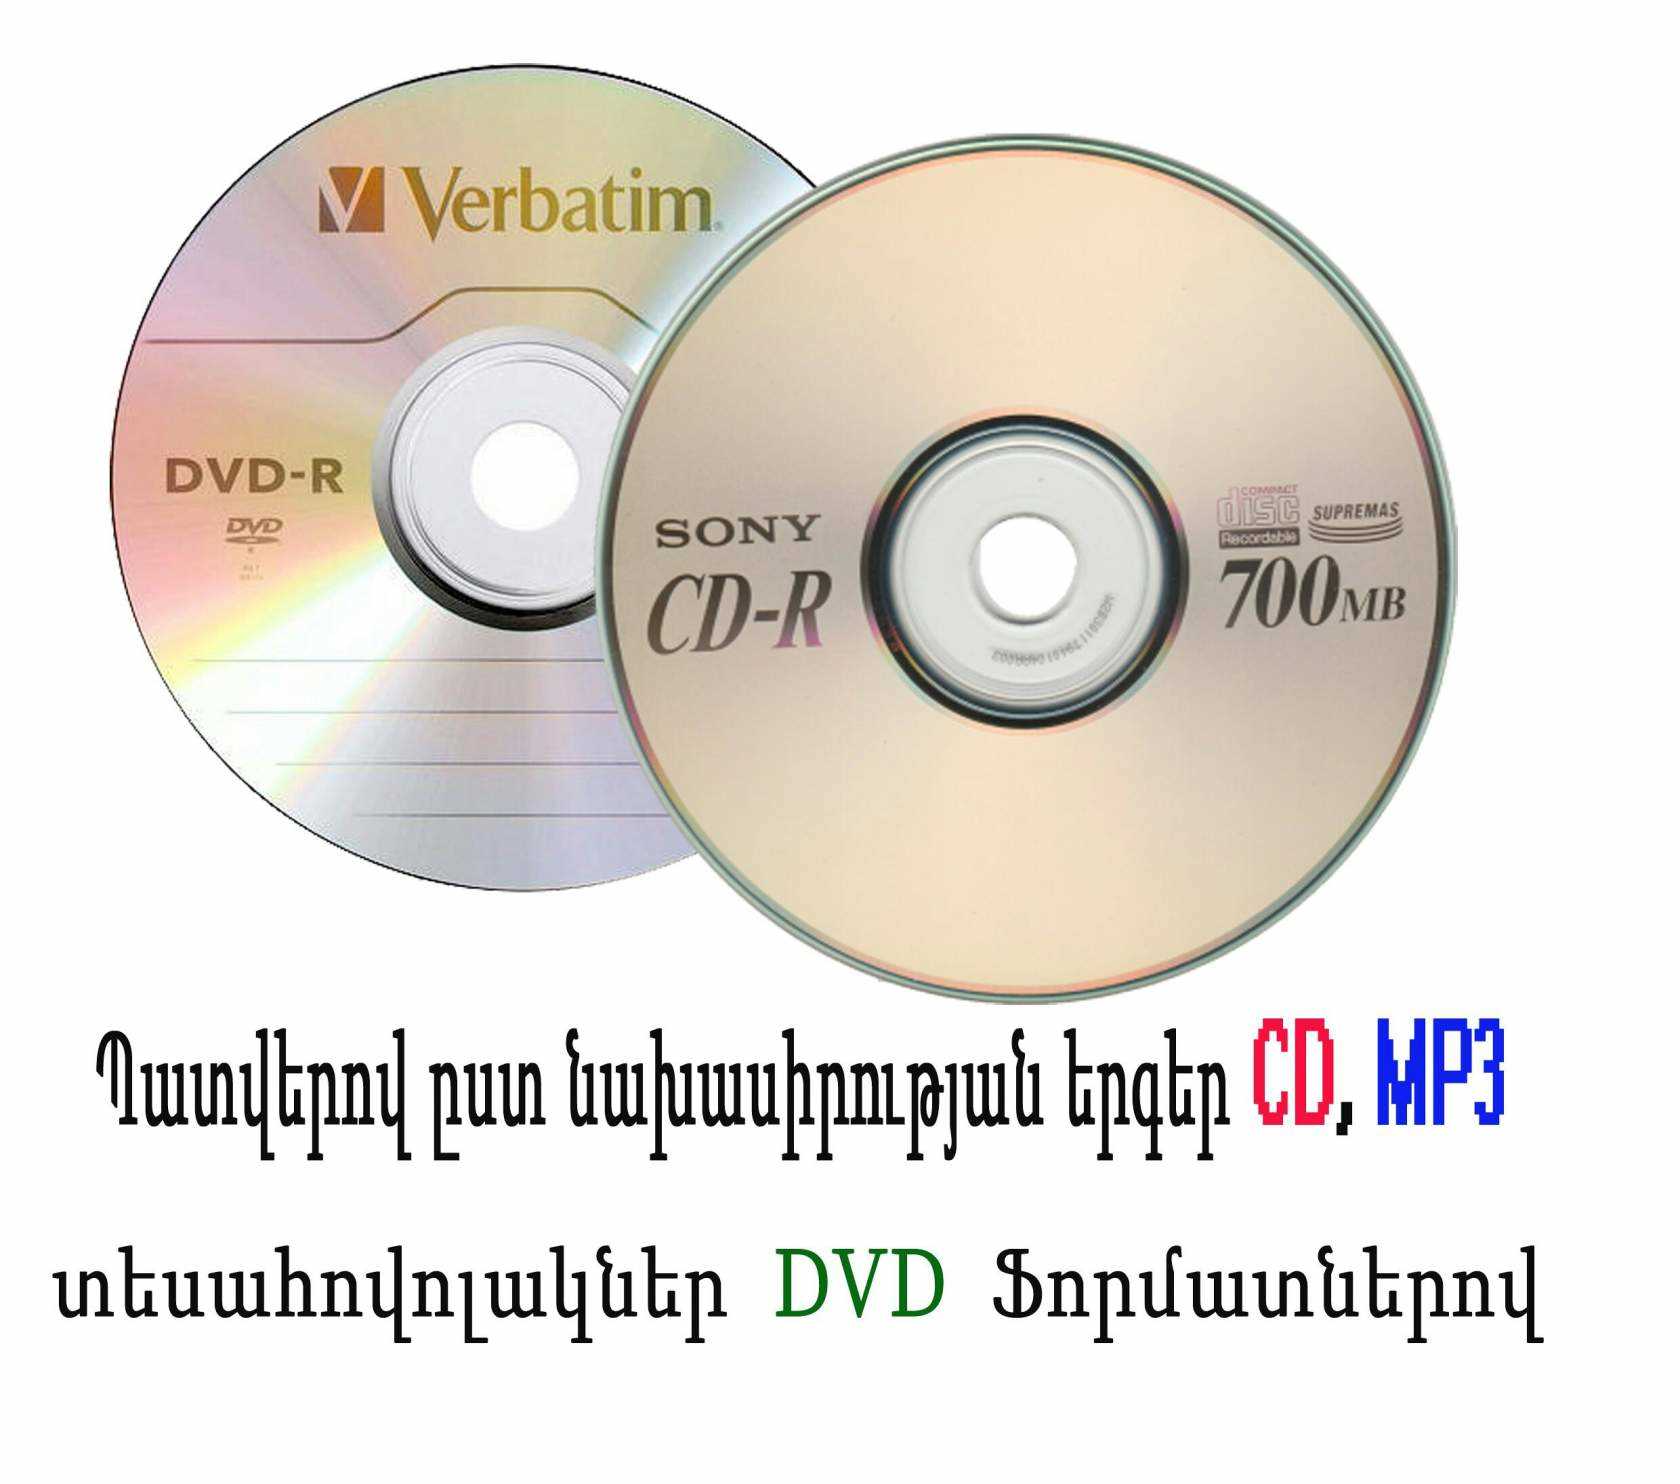 Պատվերով ըստ նախասիրության երգեր CD MP3, DVD ֆորմատով տեսահոլովակներ 